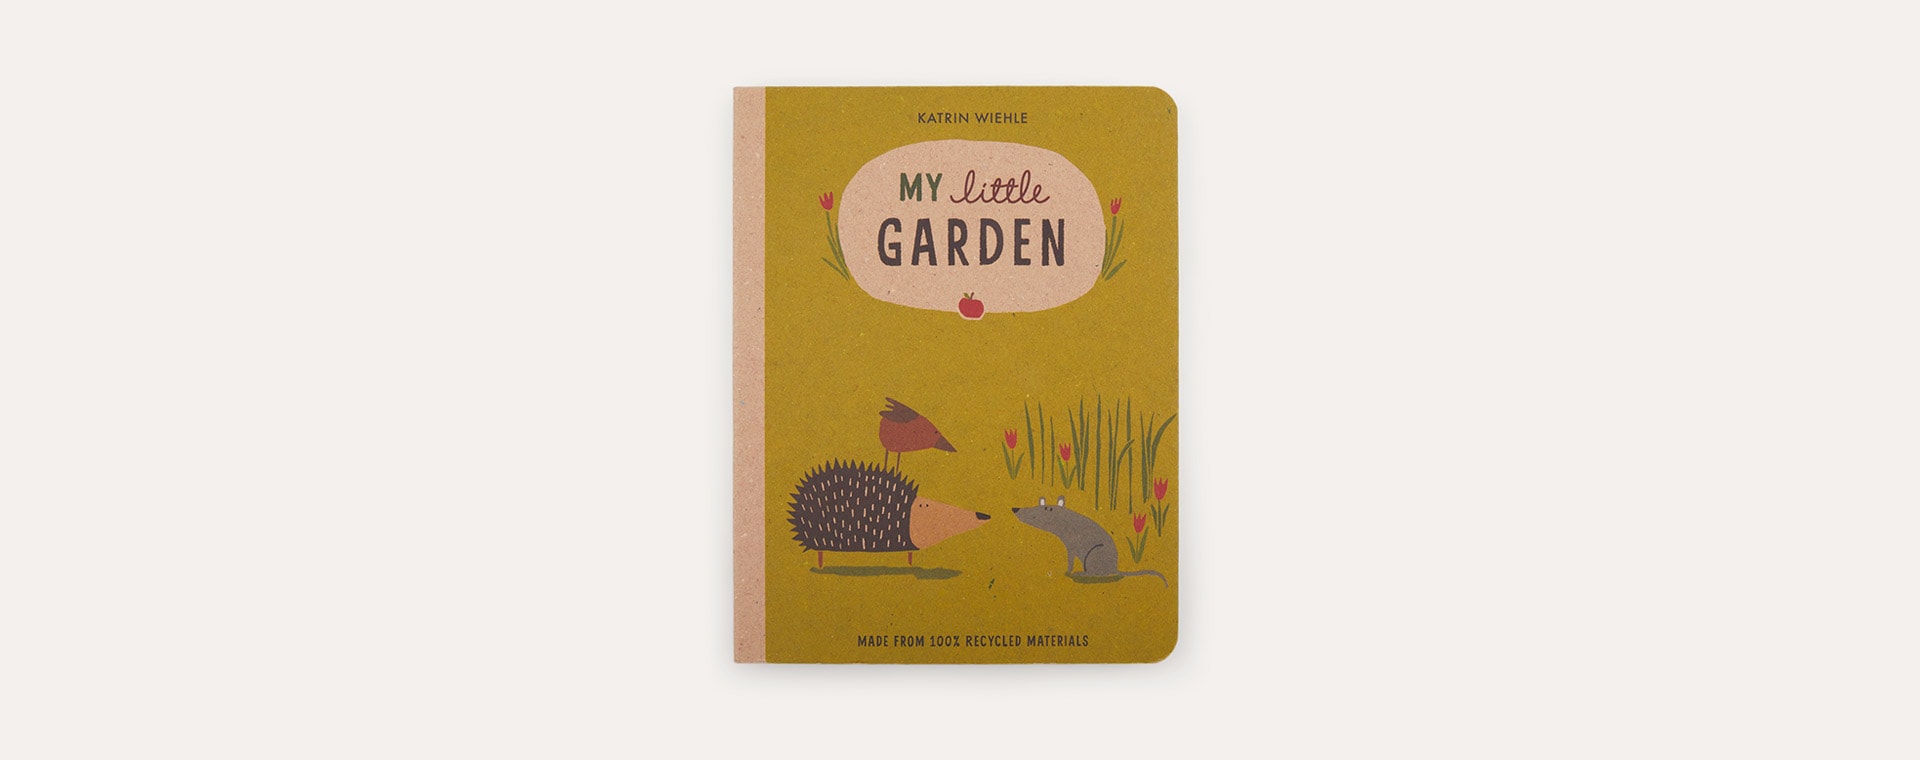 Green bookspeed My Little Garden